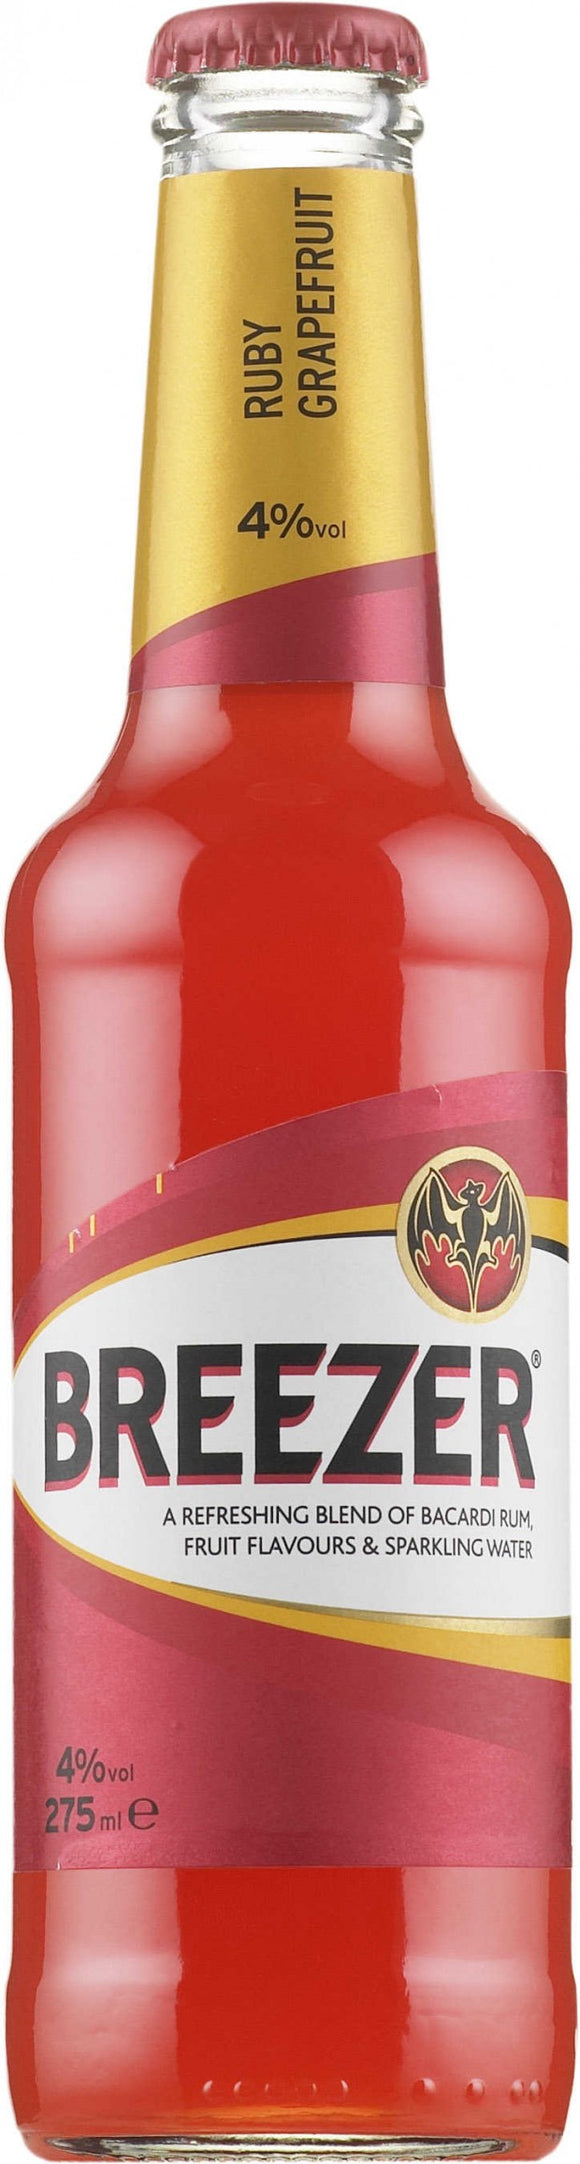 Breezer craneberry flavour 275ml